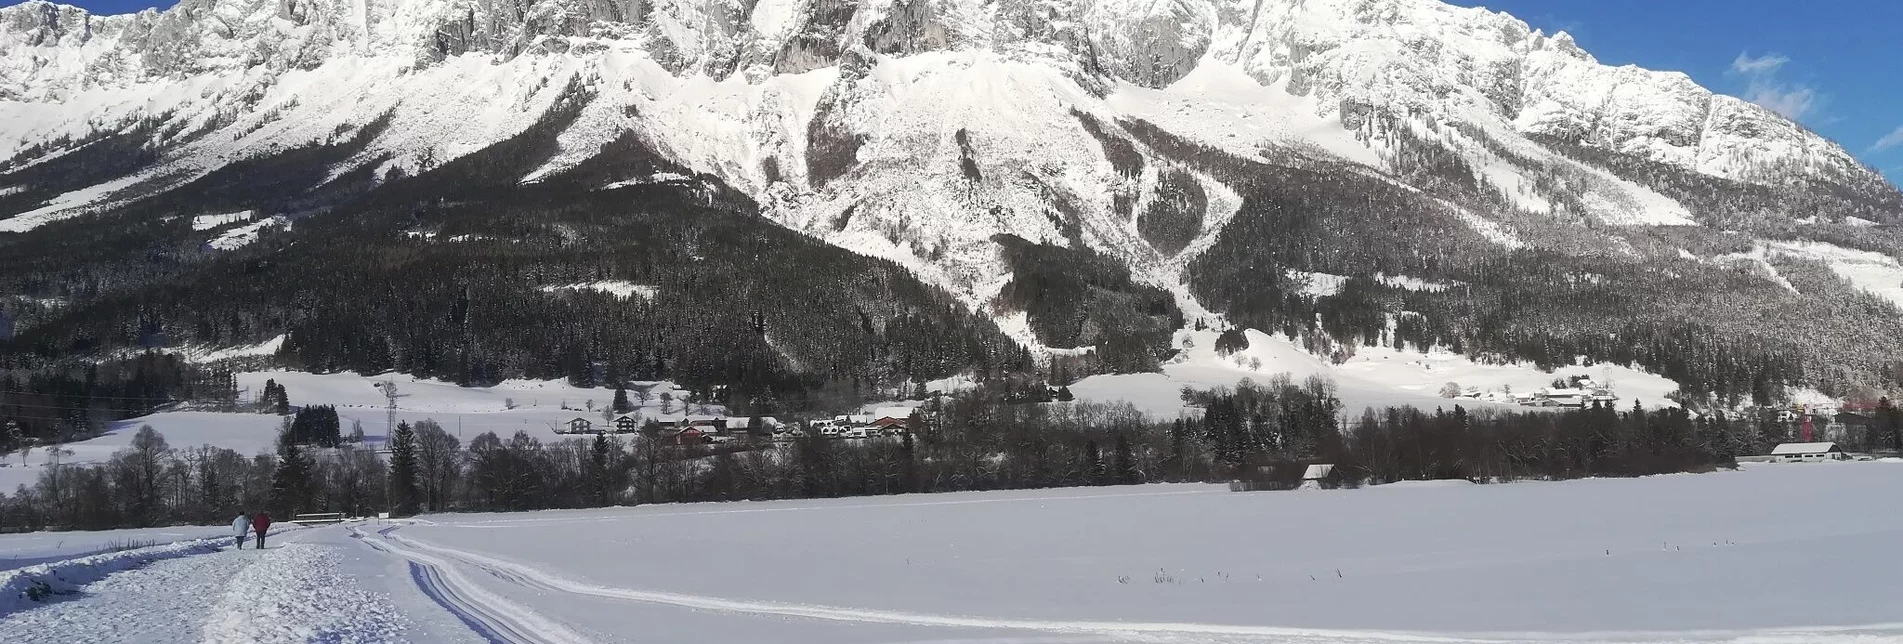 Langlauf Ennsloipe Öblarn-Niederöblarn - Touren-Impression #1 | © Erlebnisregion Schladming-Dachstein